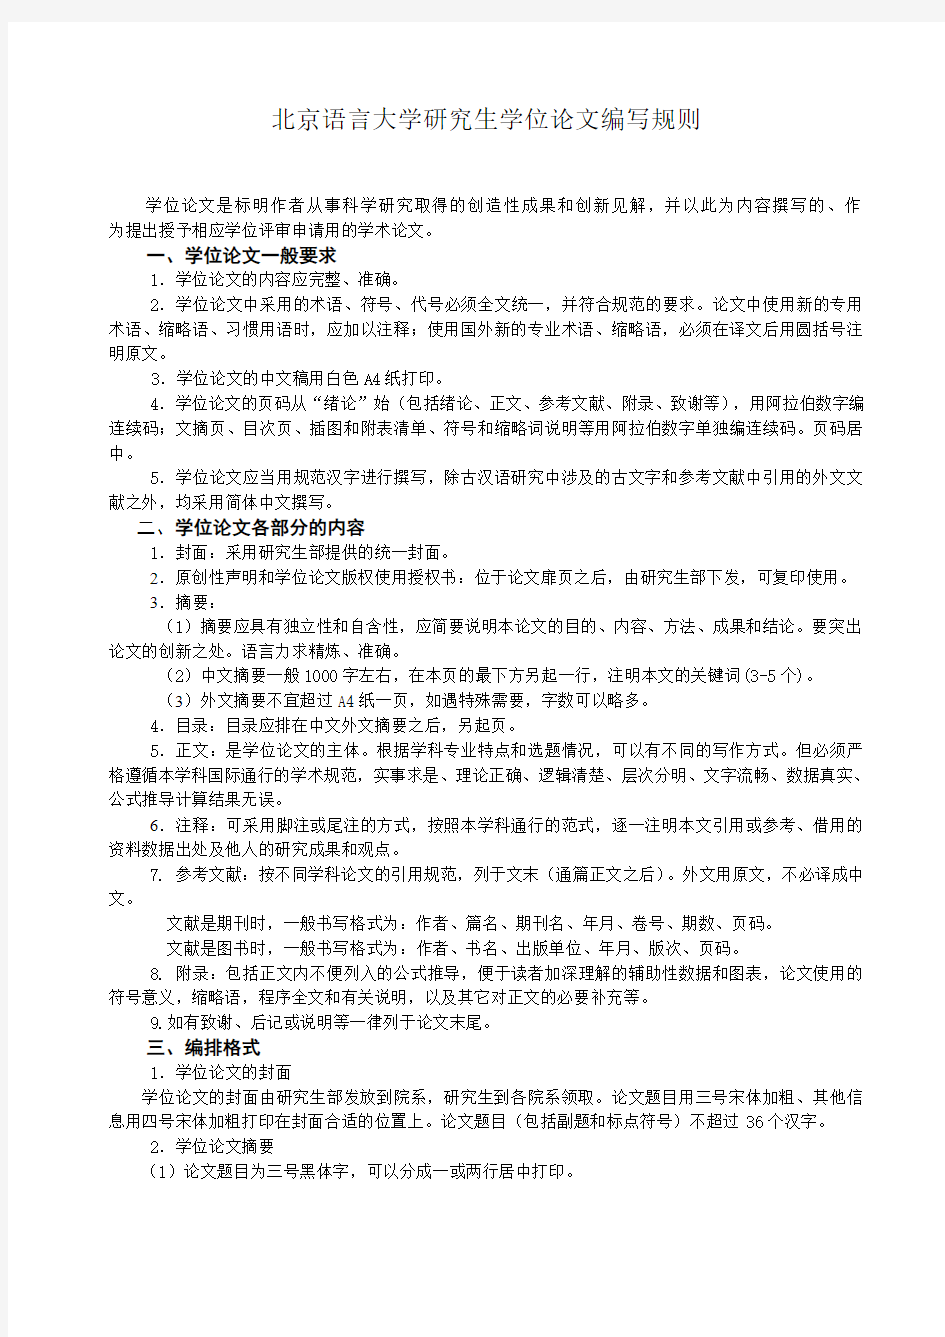 北京语言大学研究生学位论文编写规则